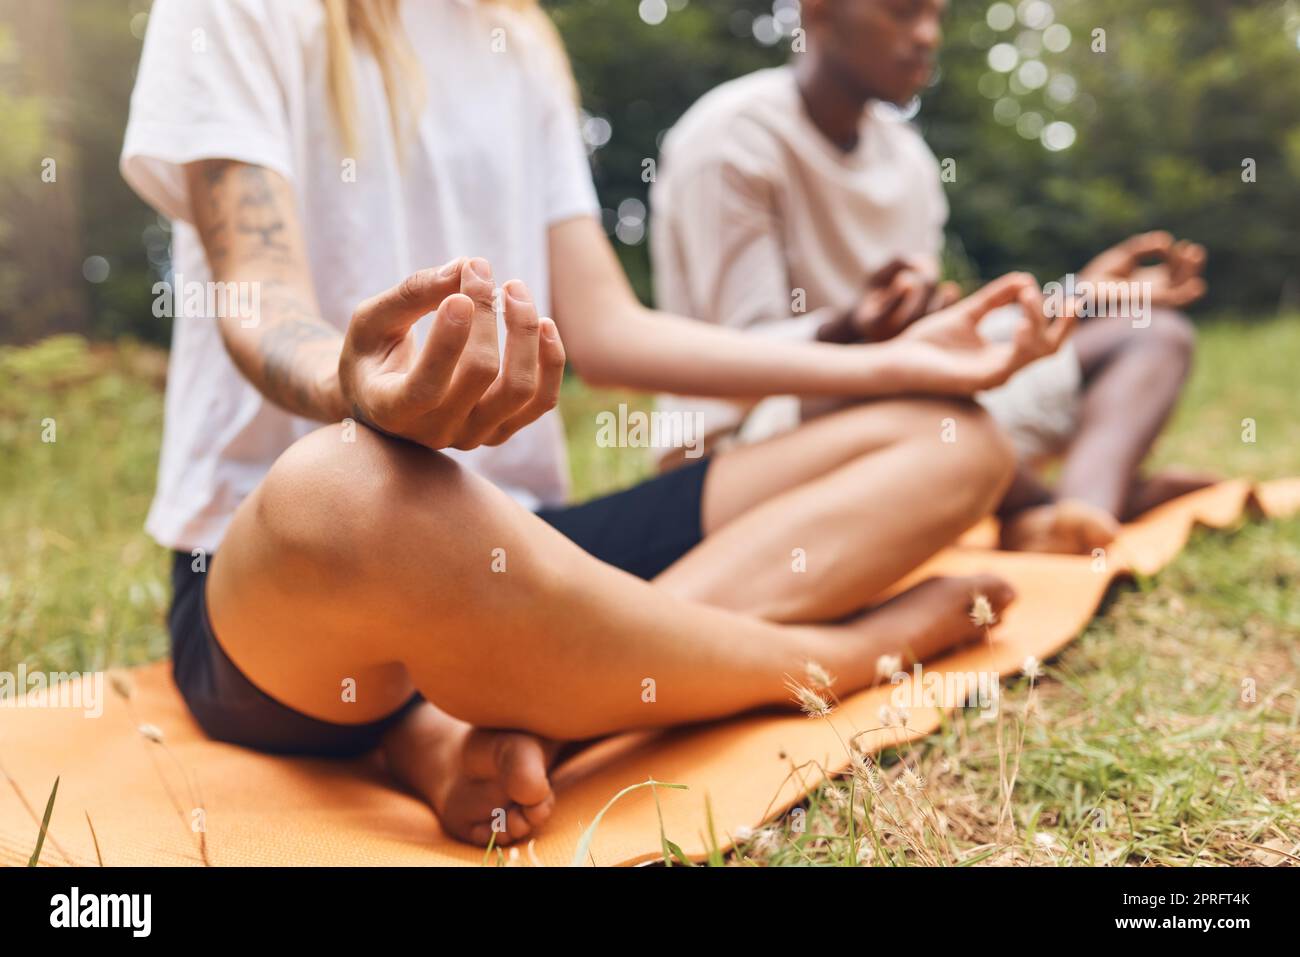 Park-Yoga-Meditation, Zen- und Mudra-Hände-Geste in Lotus-Pose für Natursport und Training. Ruhige Energie, gesunde und fokussierte Menschen mit überkreuzten Beinen Training für Frieden, Wellness Gleichgewicht und Entspannung Stockfoto